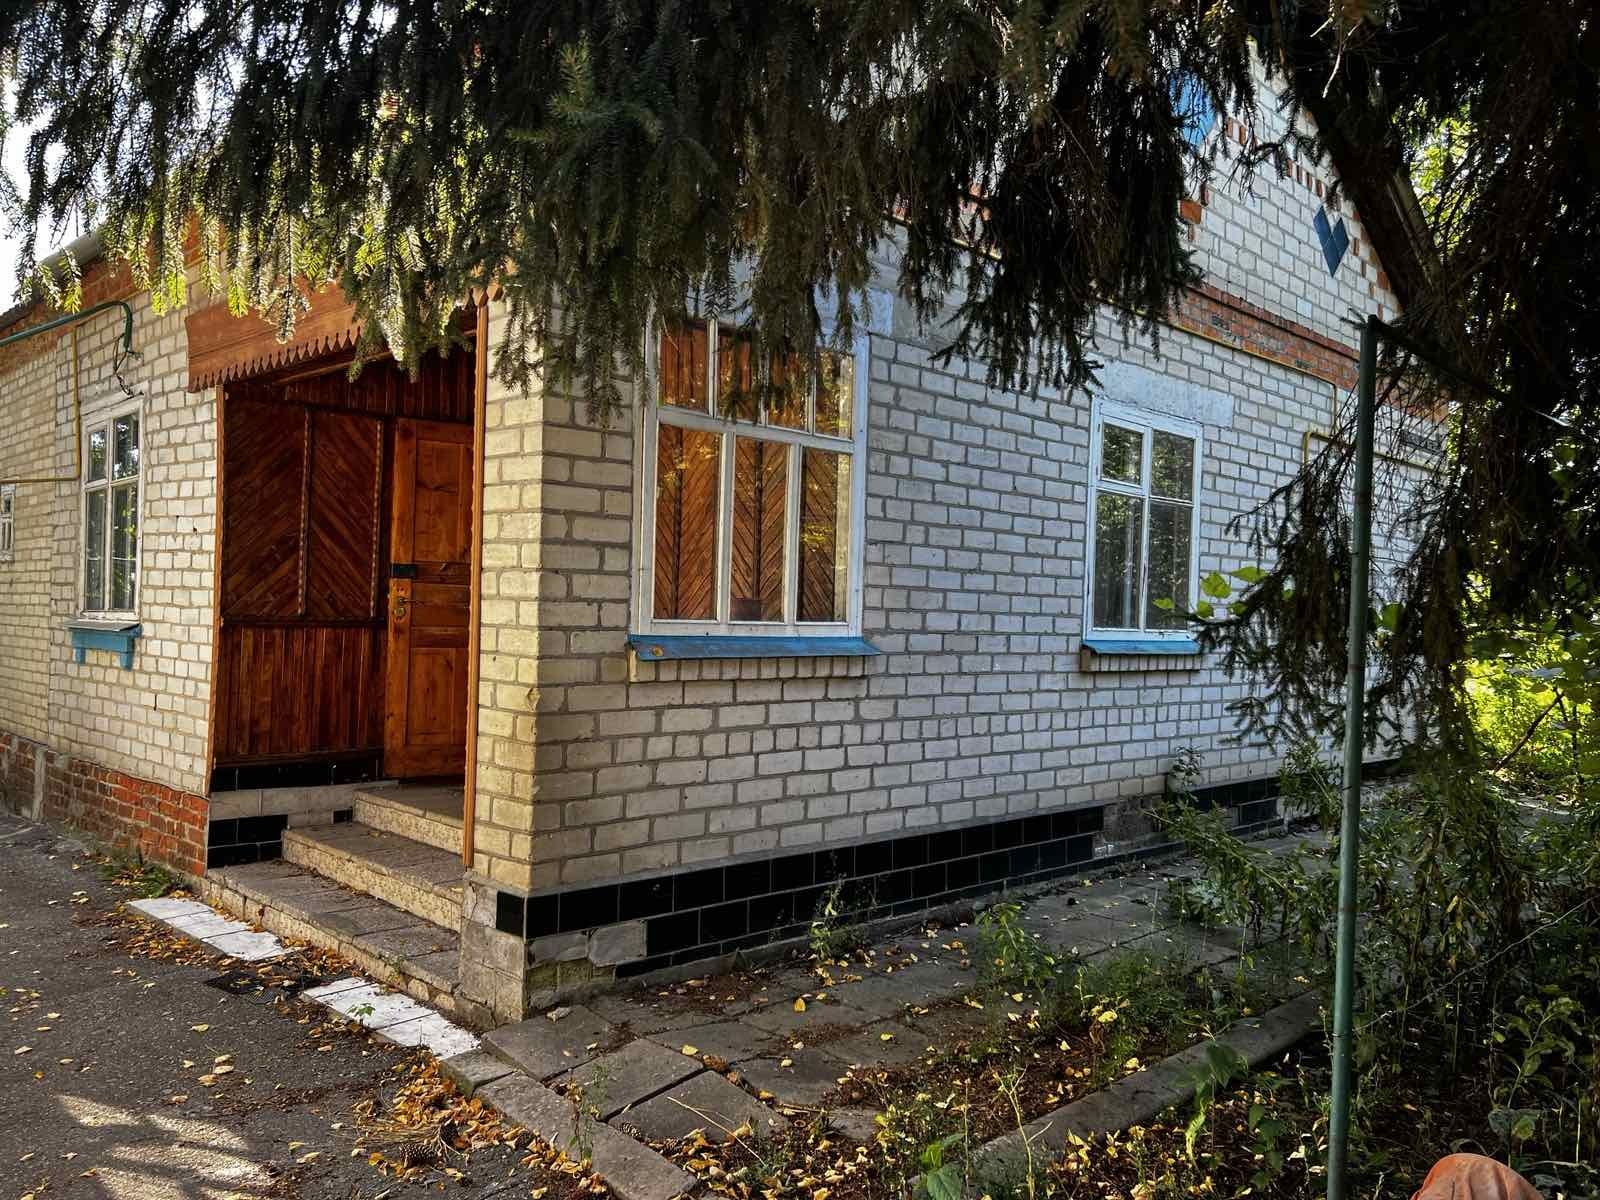 Продам 1/2 дома отдельный двор в Нововодолажском районе,